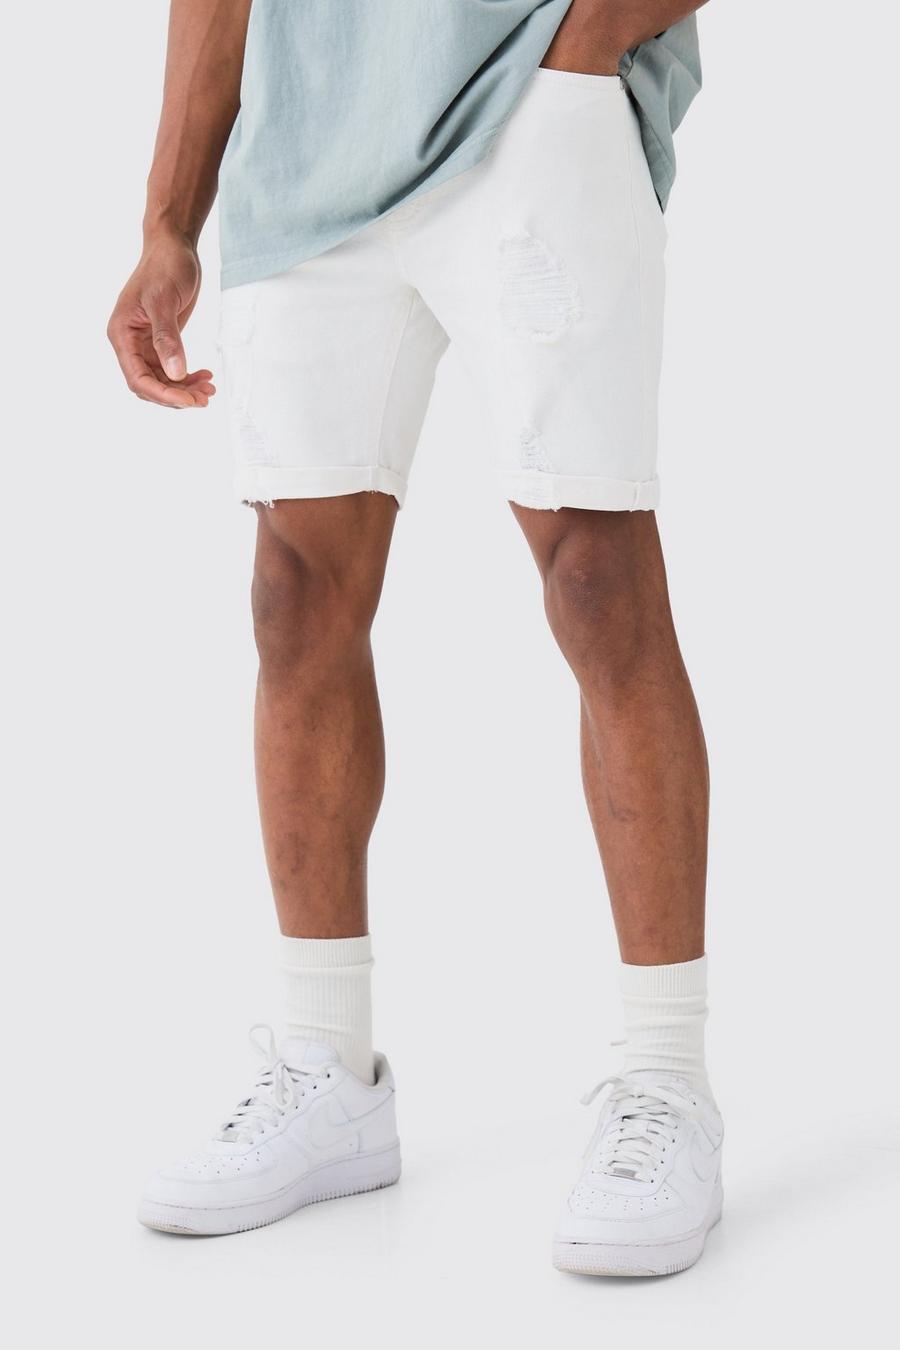 Pantaloncini bianchi in denim Stretch Skinny Fit effetto smagliato, White